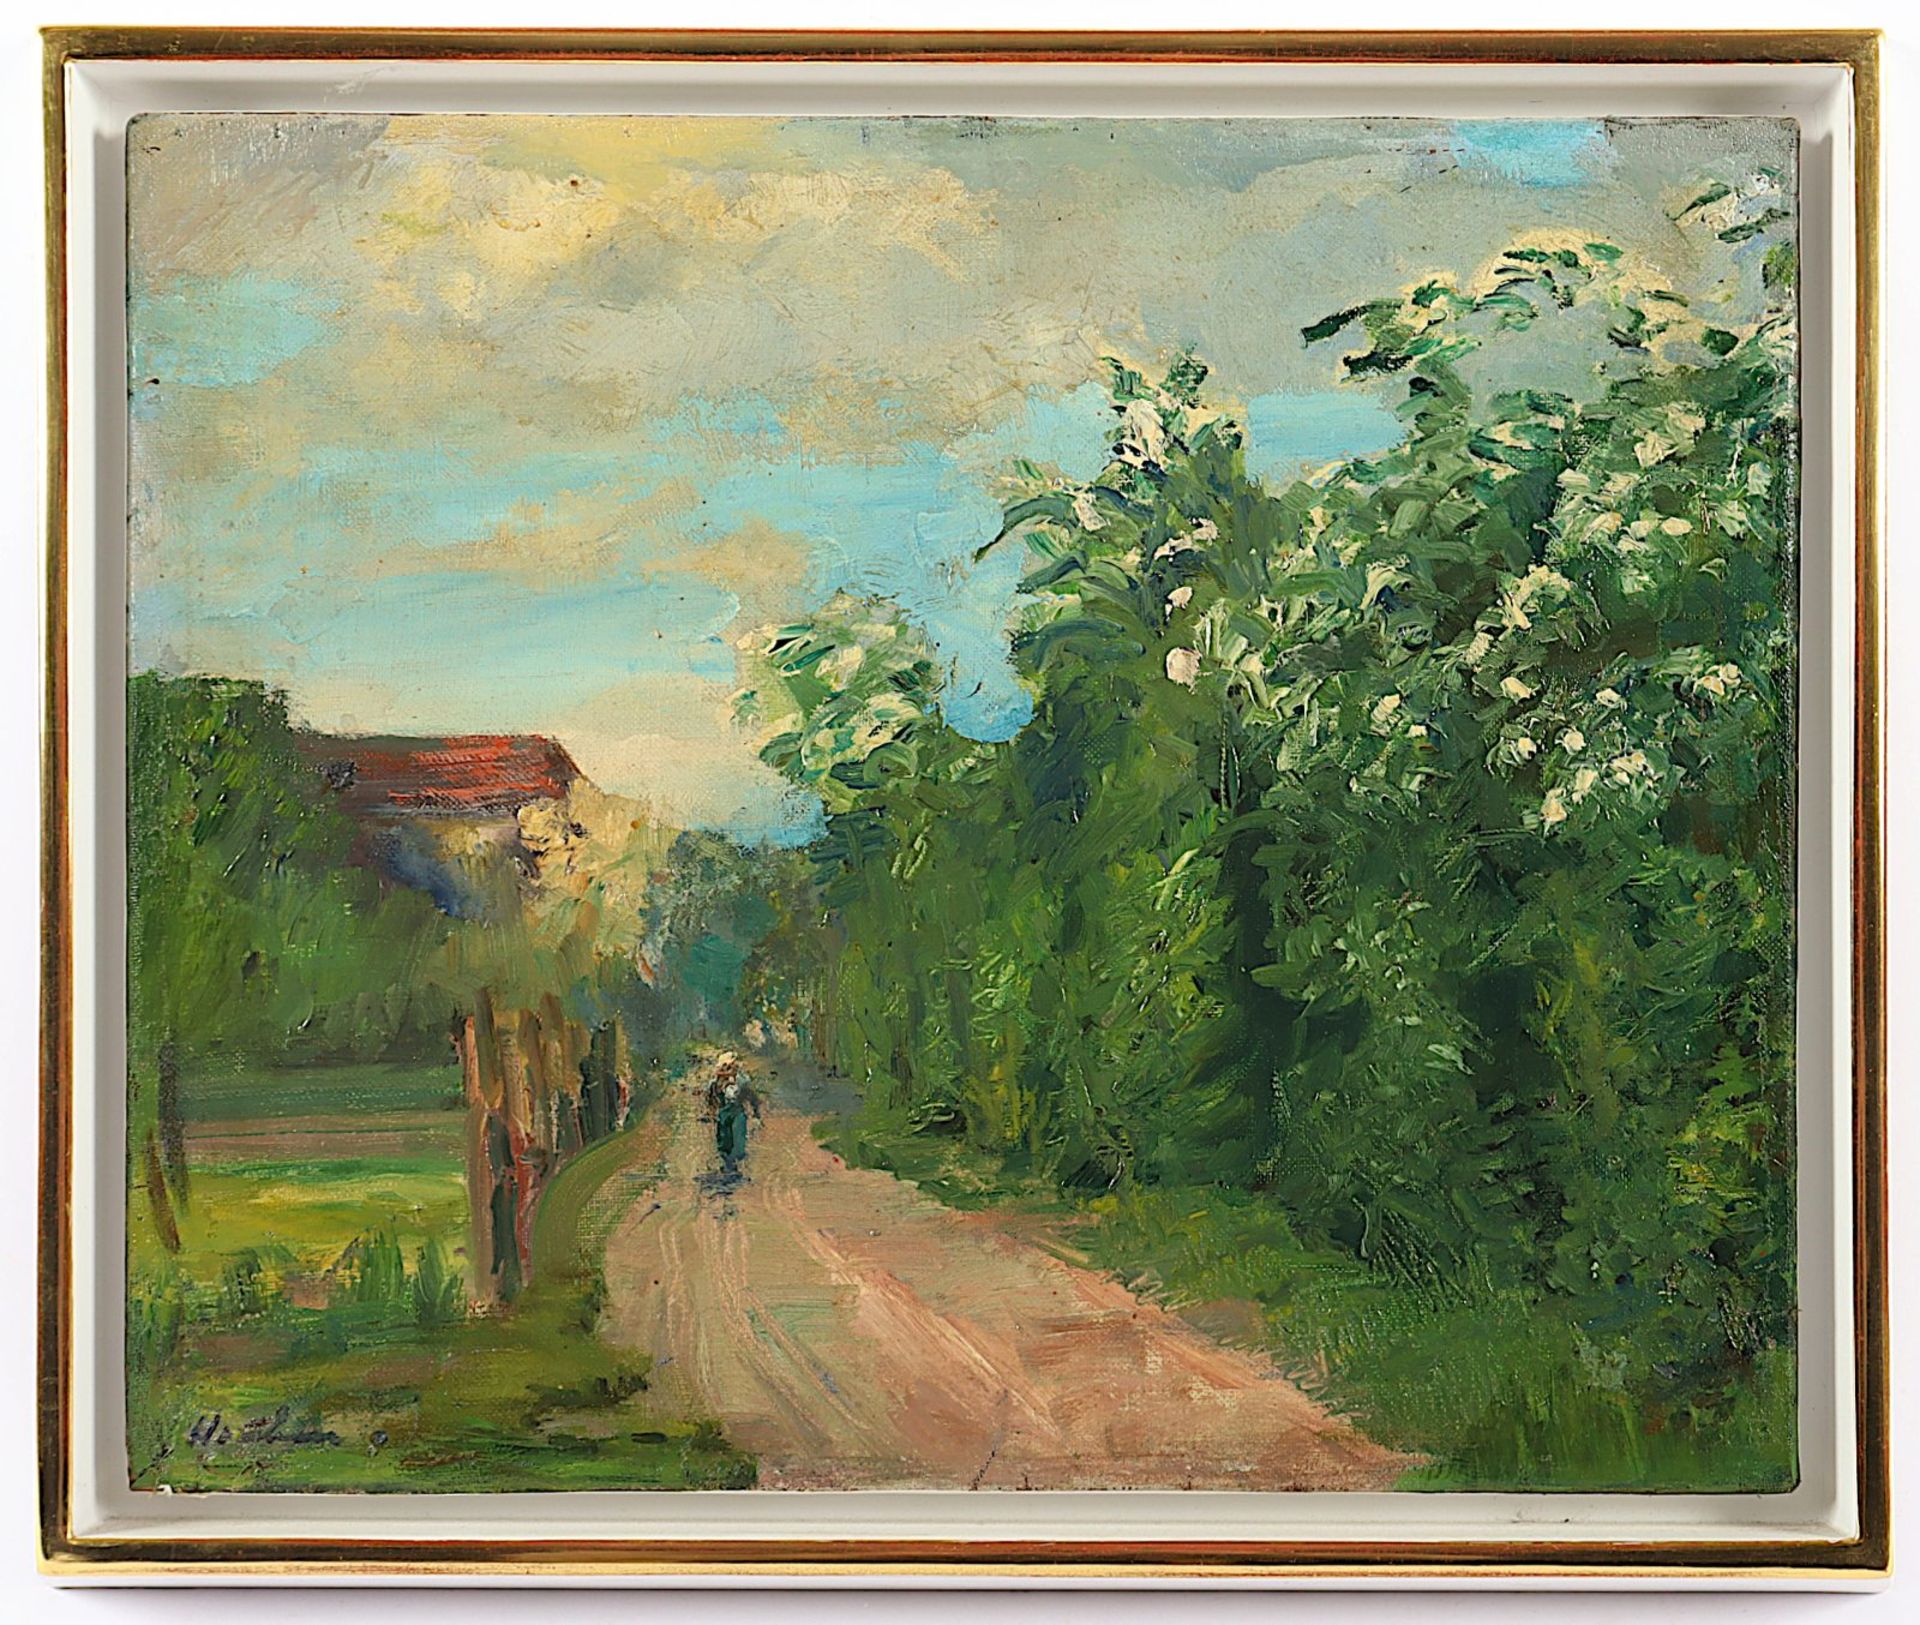 HOUBEN, Heinrich (1885-1967), "Landschaft mit Dorfstraße", R.